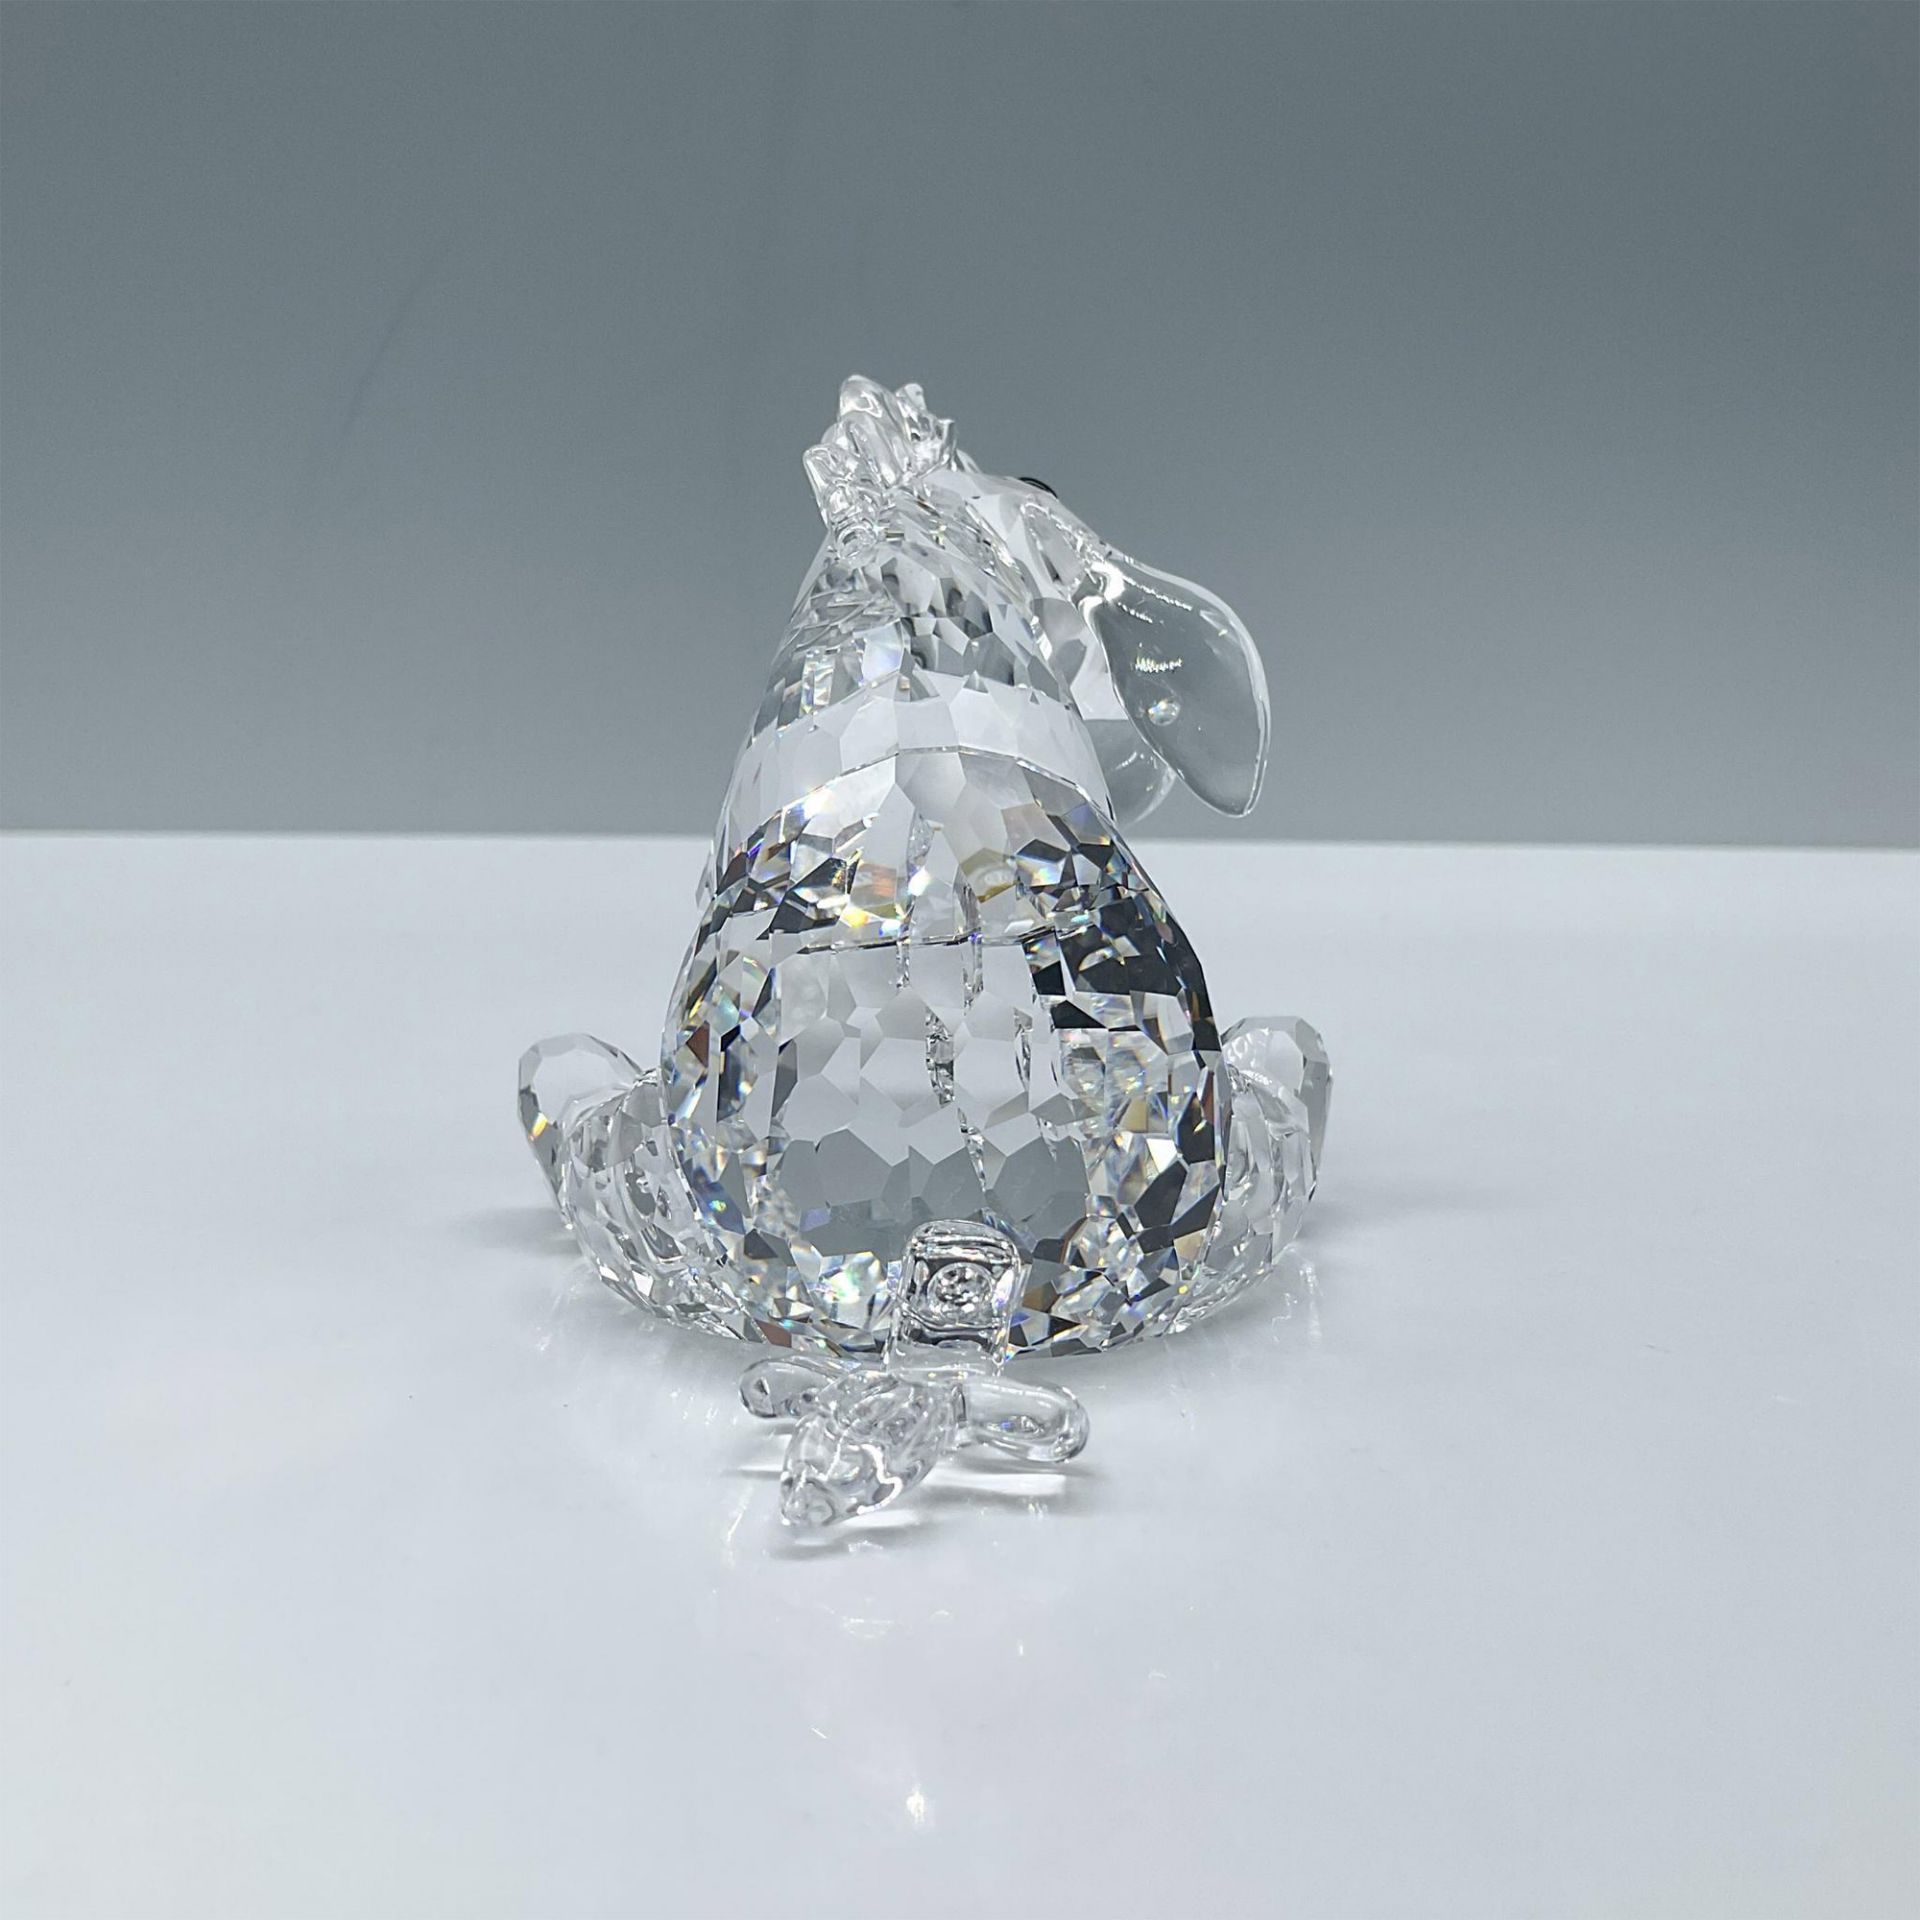 Swarovski Crystal Figurine, Eeyore - Image 2 of 4